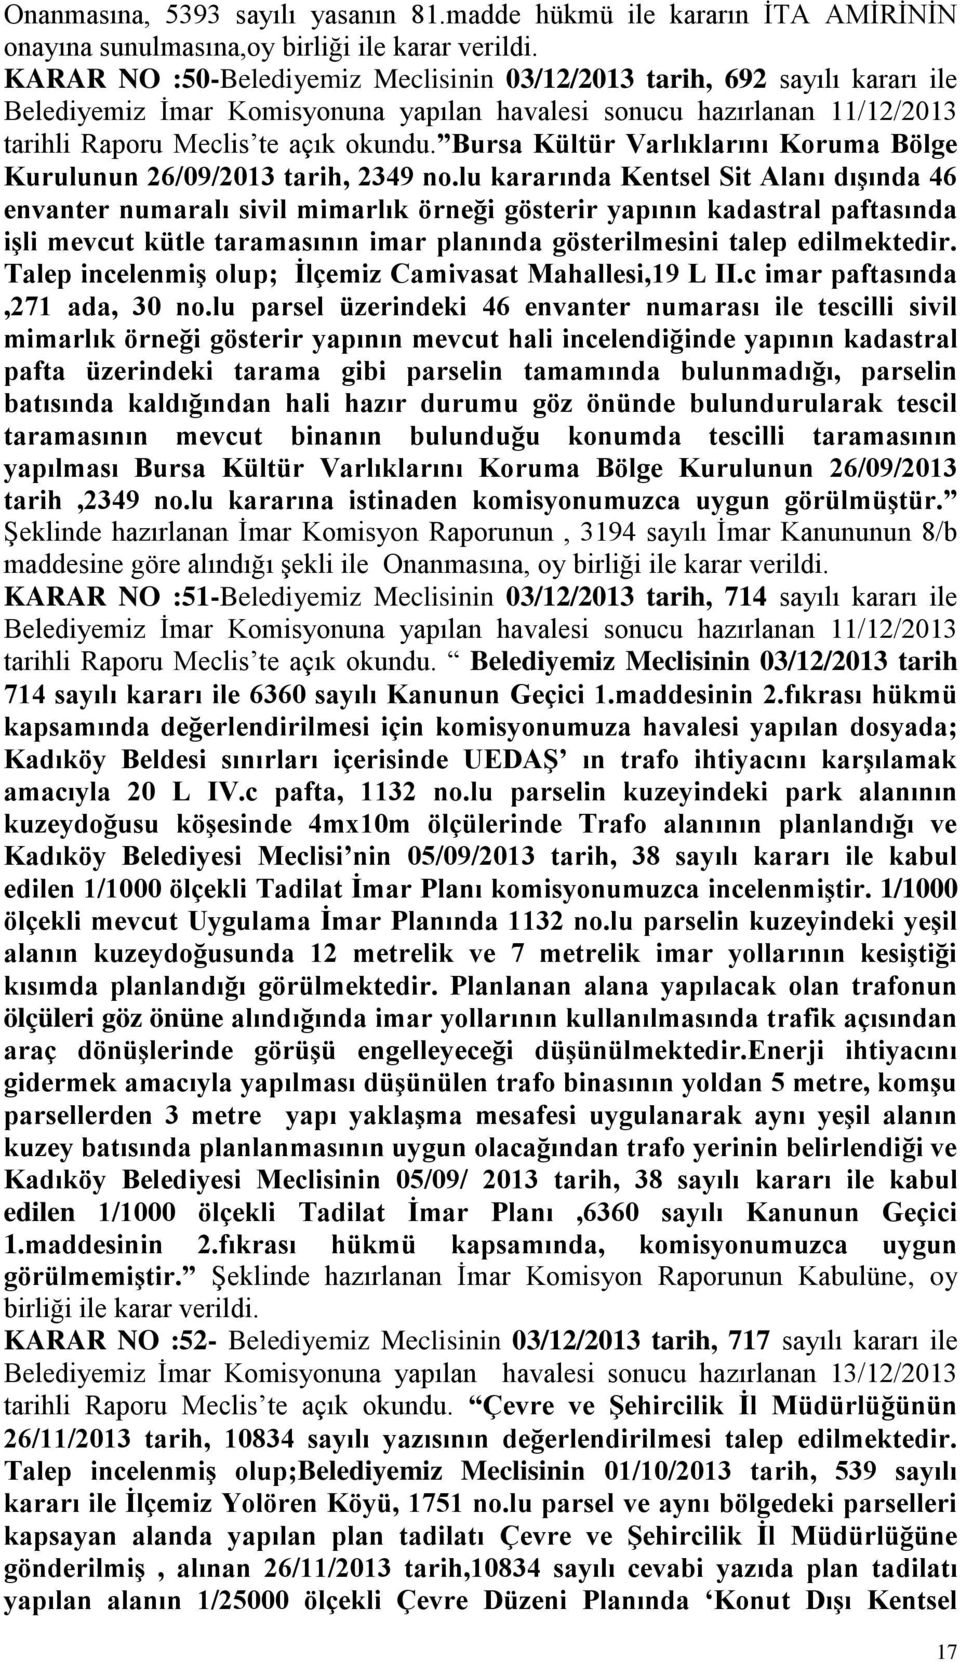 Bursa Kültür Varlıklarını Koruma Bölge Kurulunun 26/09/2013 tarih, 2349 no.